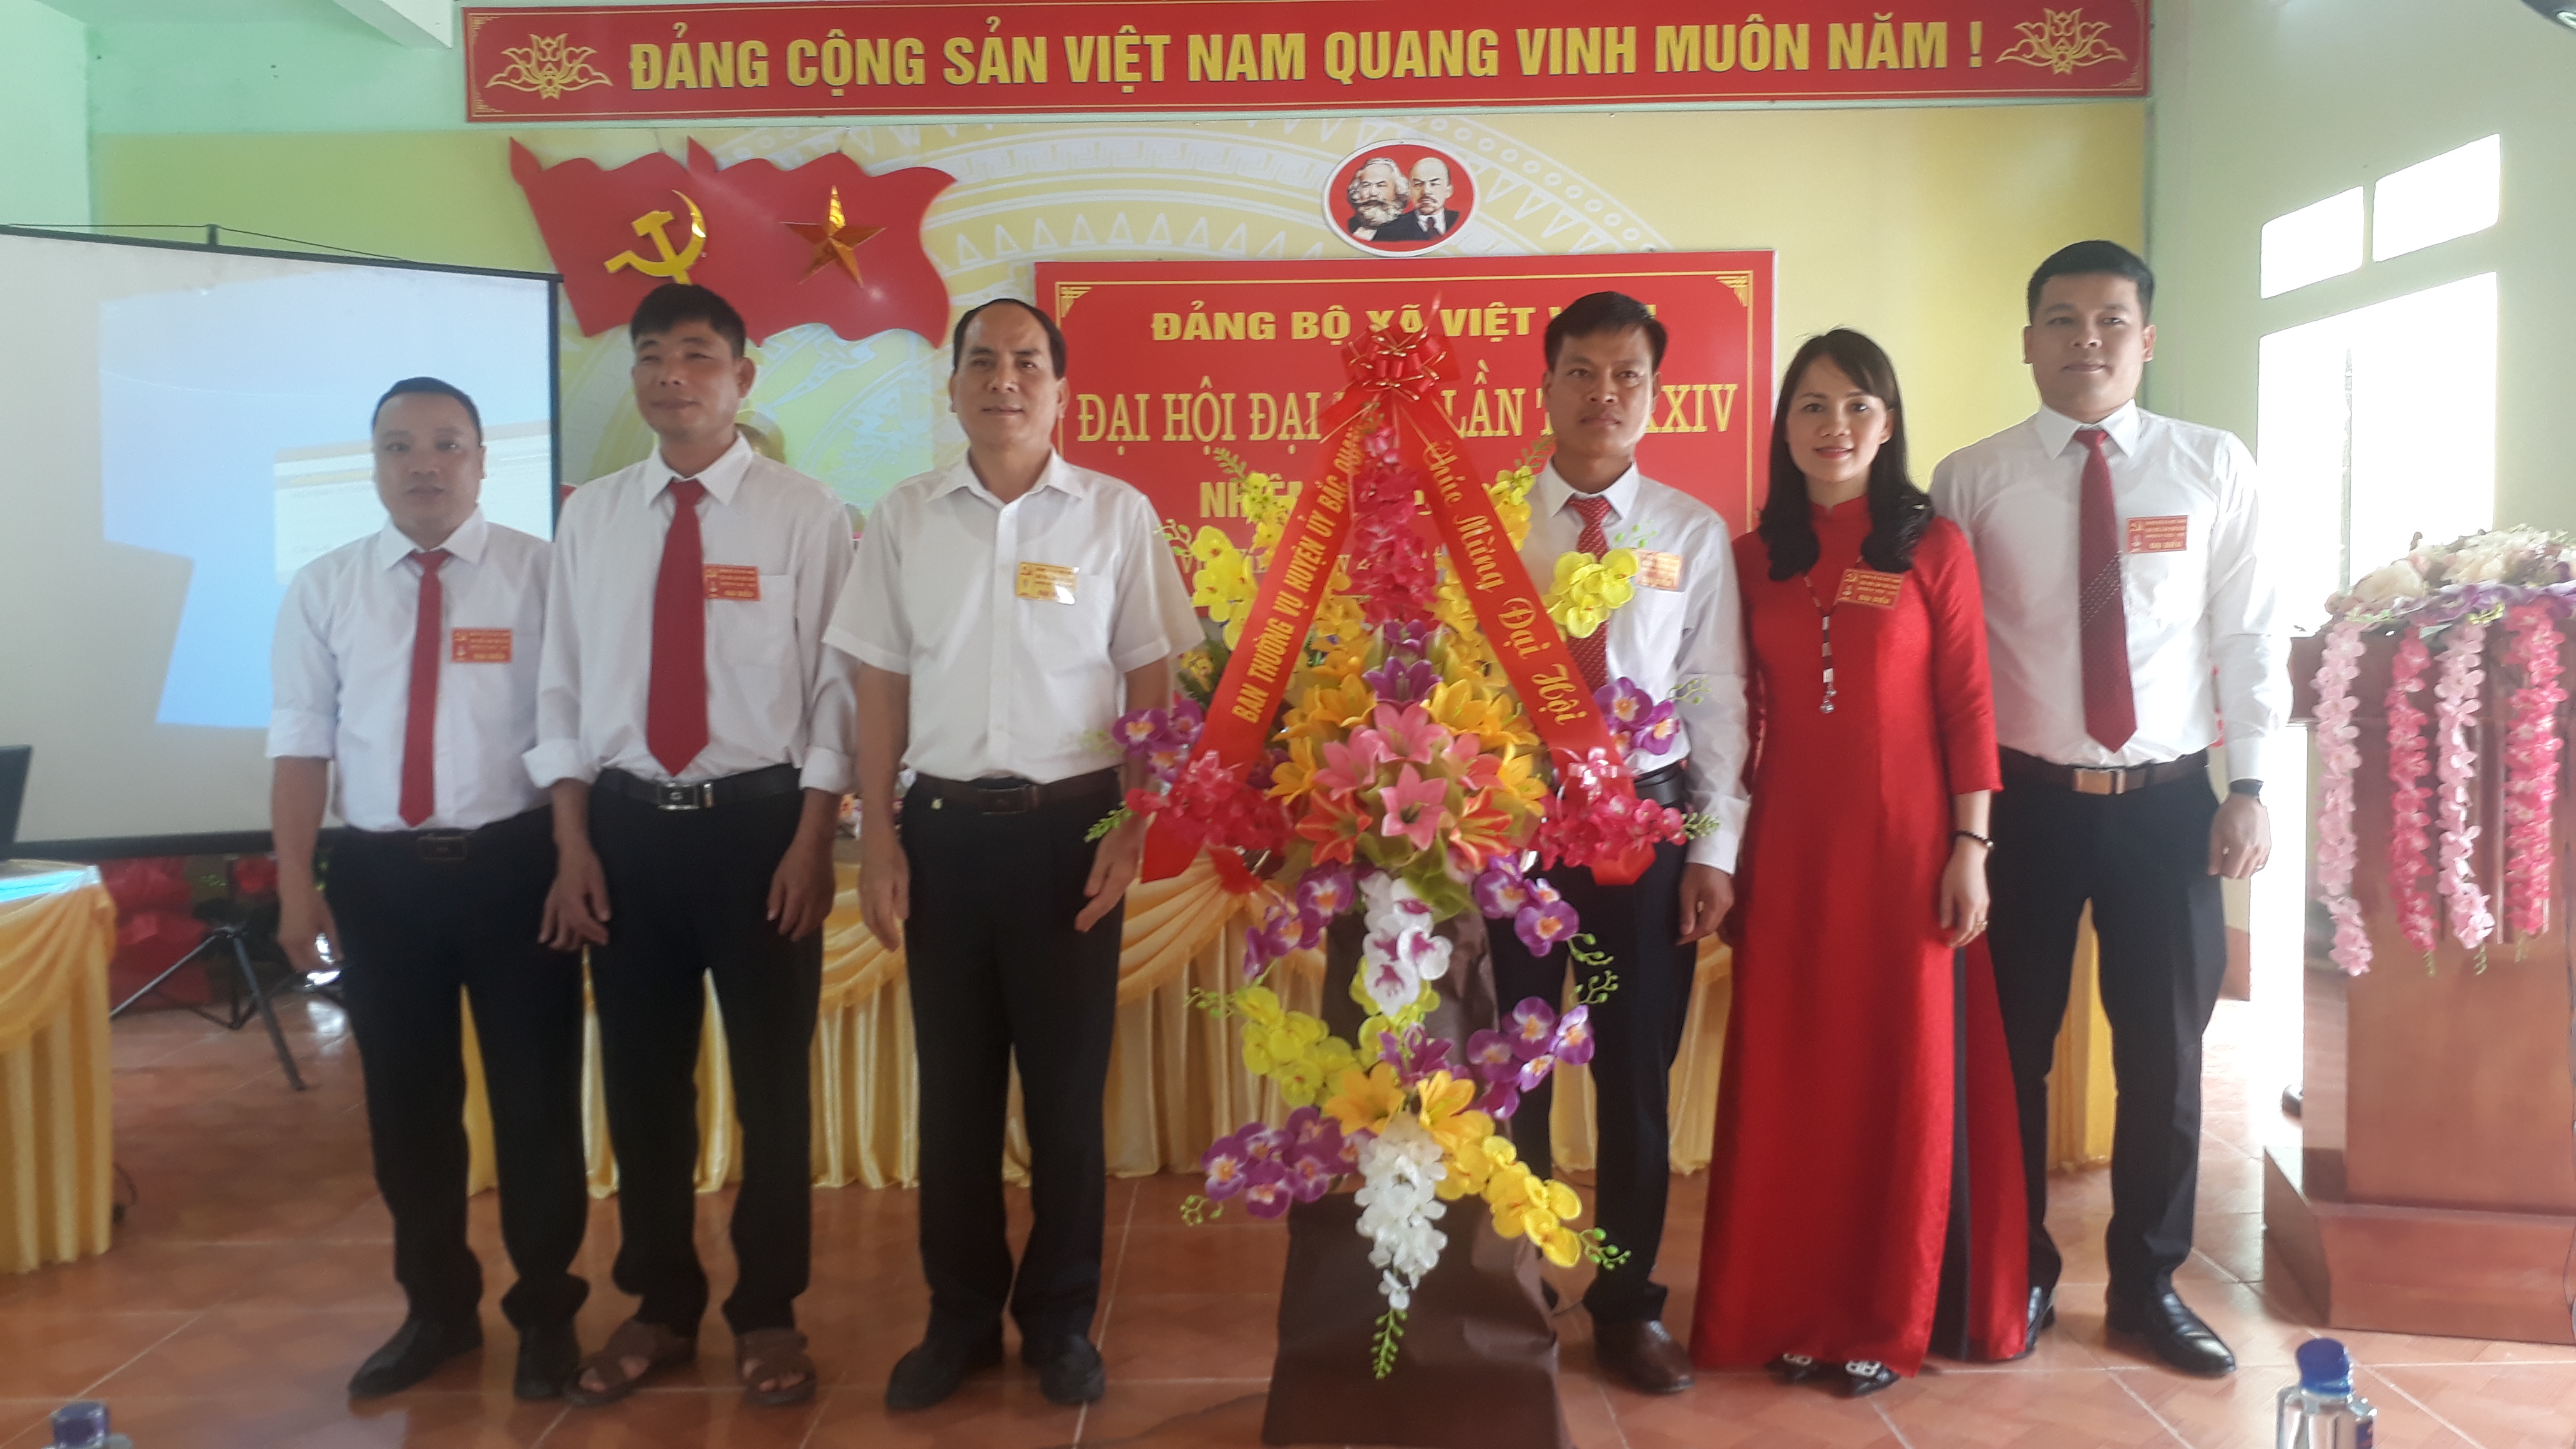 Đảng bộ xã Việt Vinh tổ chức thành công Đại hội đại biểu Đảng bộ xã lần thứ XXIV, nhiệm kỳ 2020-2025